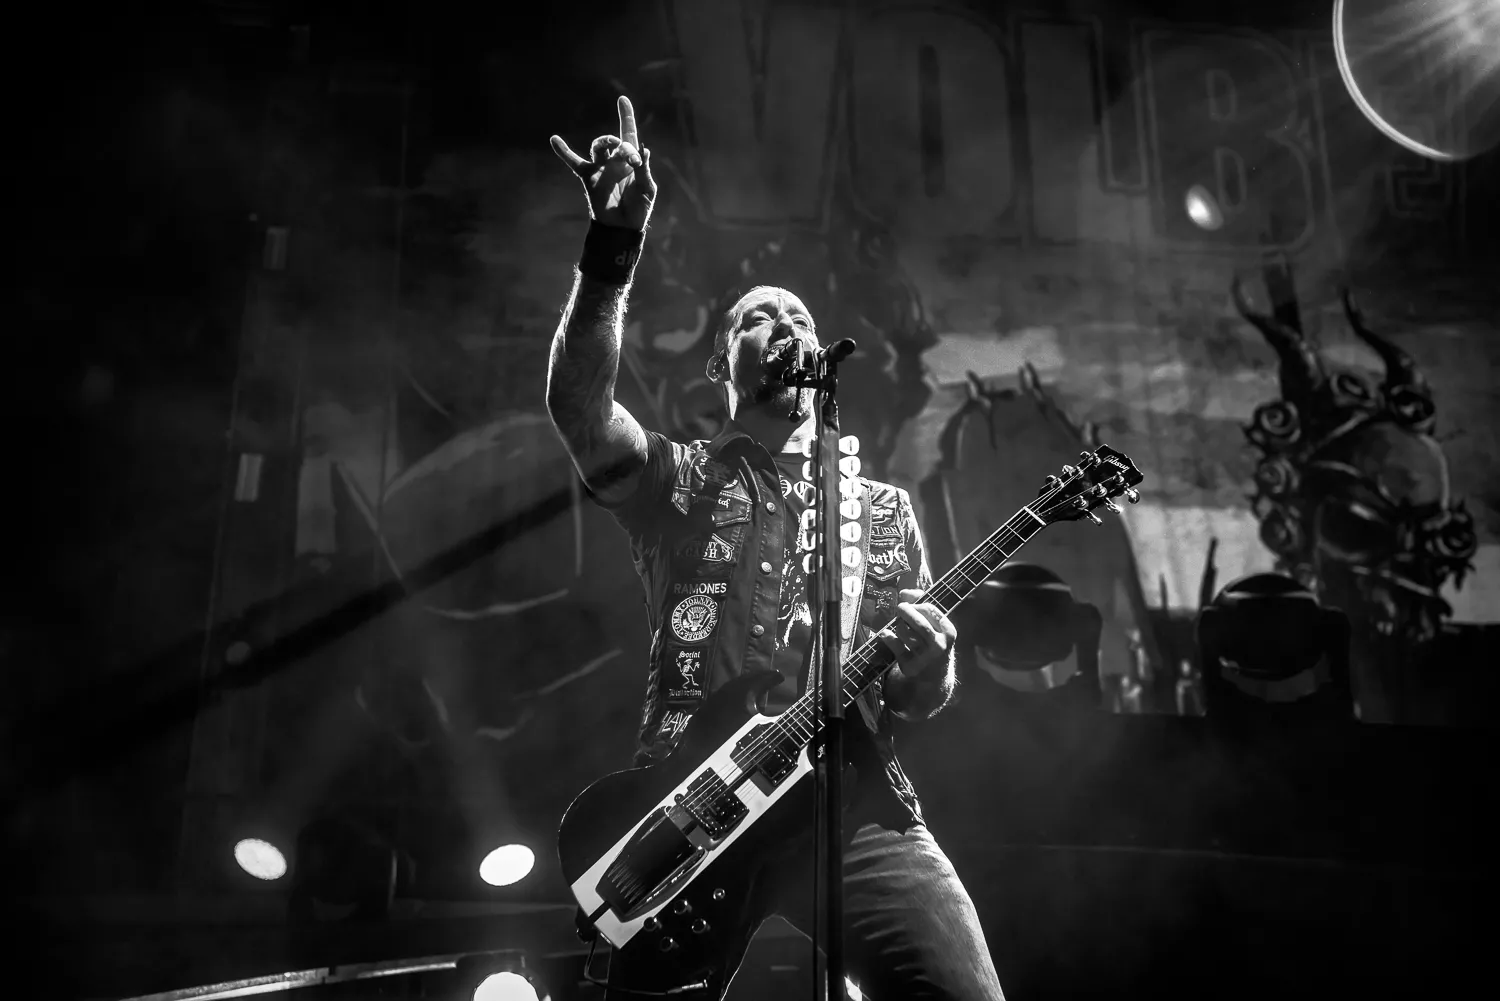 Før Volbeat: Så få danske navne har headlinet Telia Parken